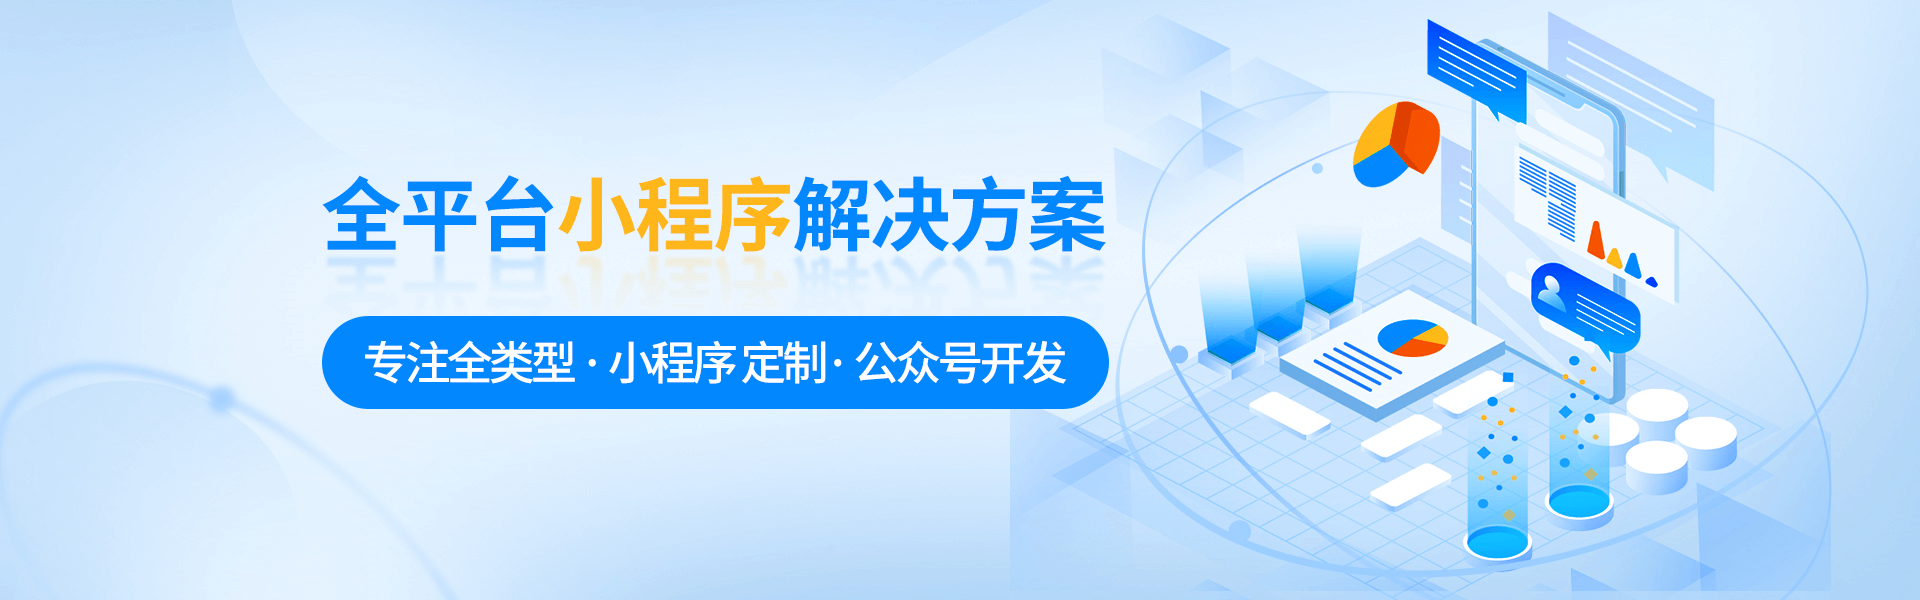 微信小程序开发_小程序制作_定制小程序_小程序开发公司_上海小程序开发_开发小程序_公众号开发